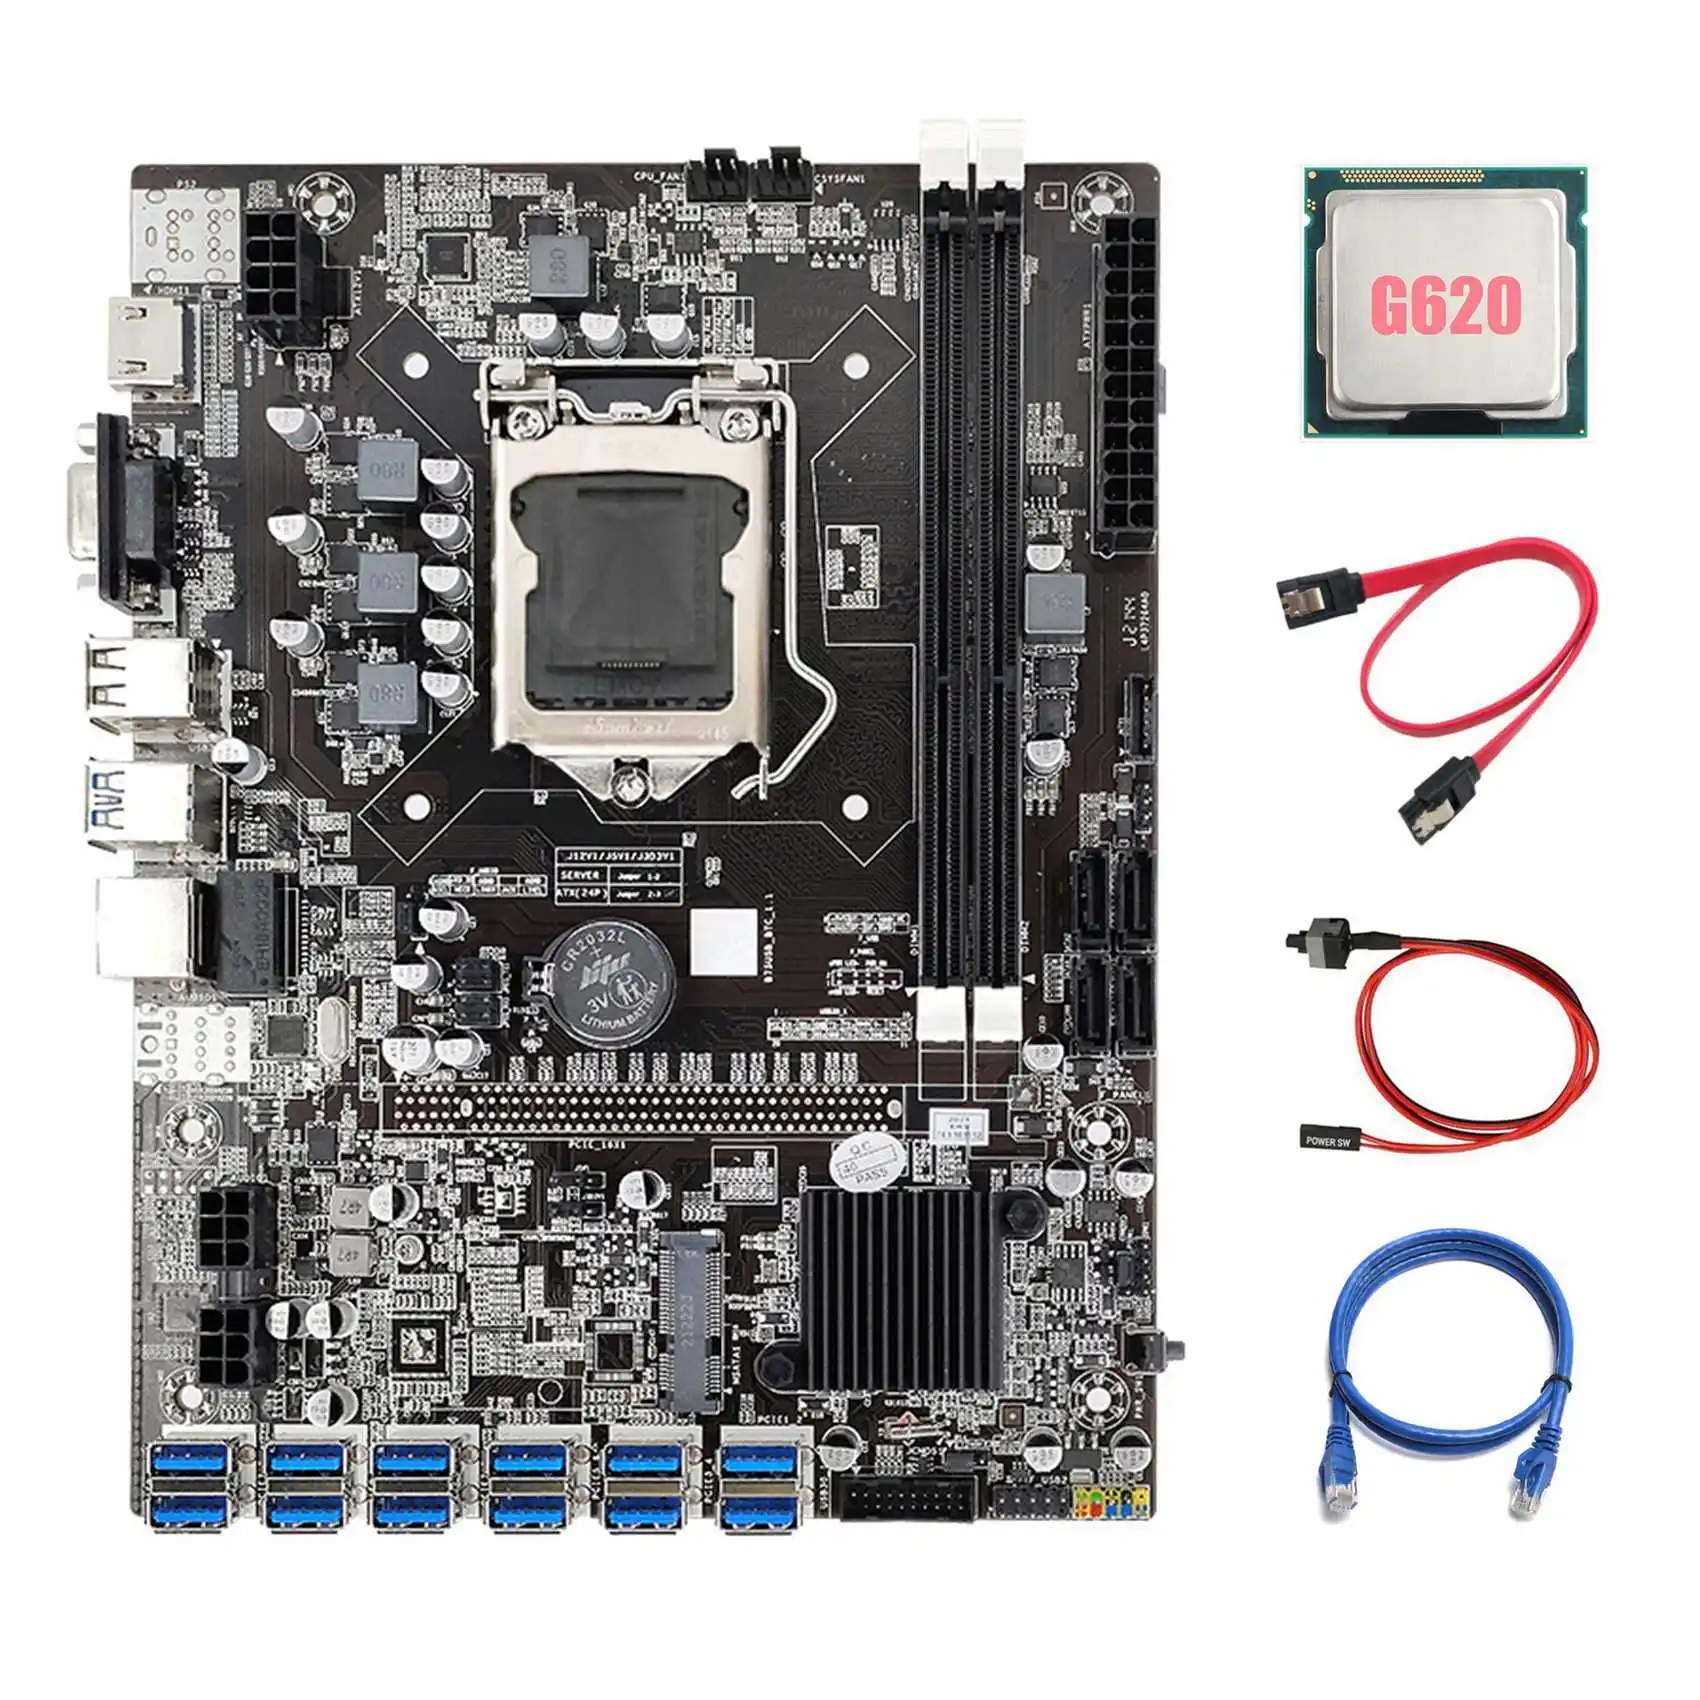 

Материнская плата B75 ETH Miner 12 PCIE на USB3.0 + G620 CPU + сетевой кабель RJ45 + кабель SATA + кабель коммутатора LGA1155 материнская плата